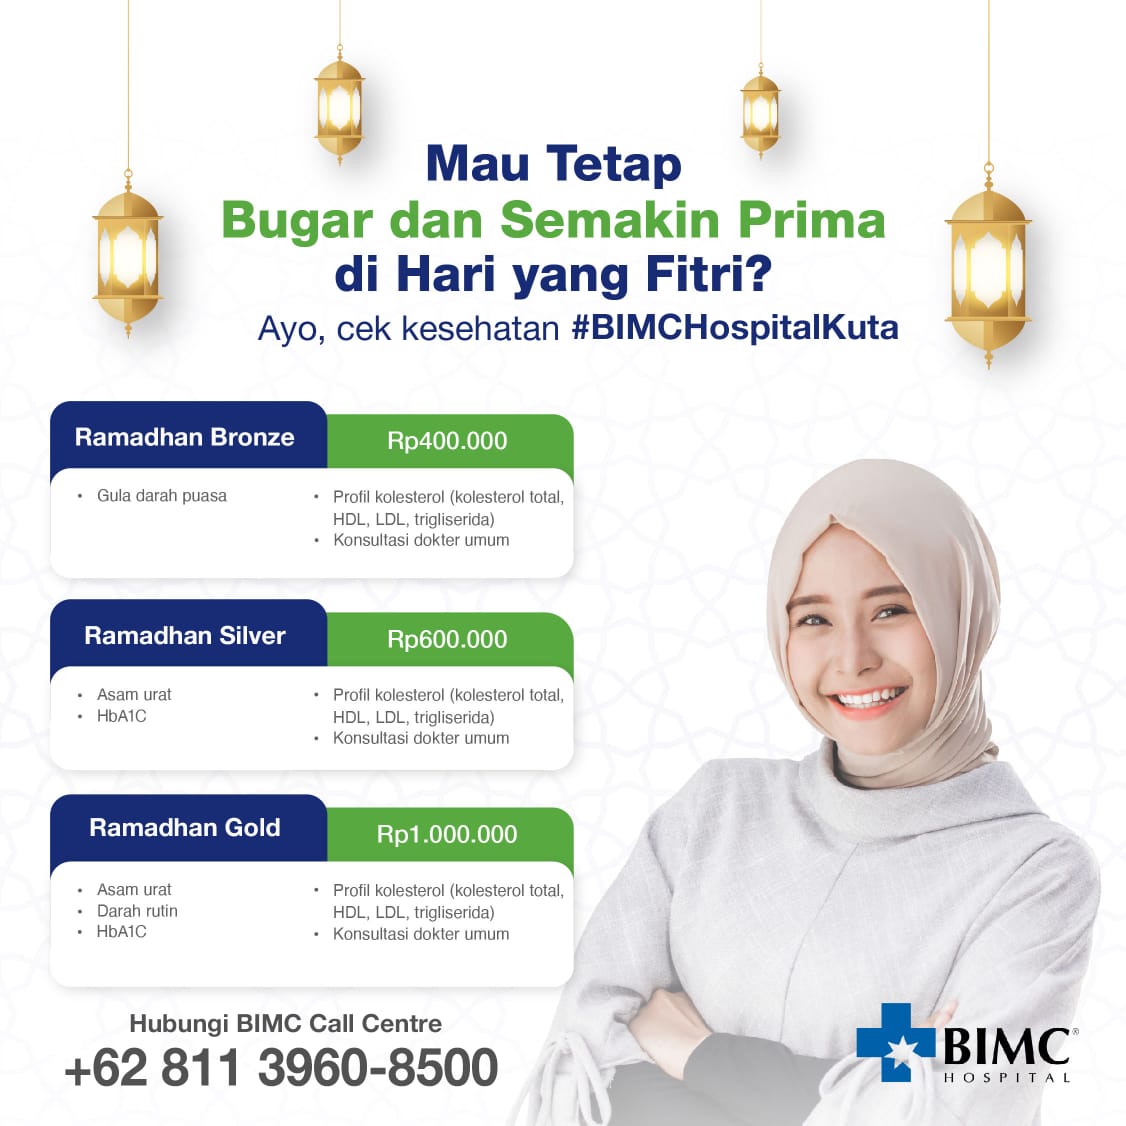 Bimc Ramadan Promo